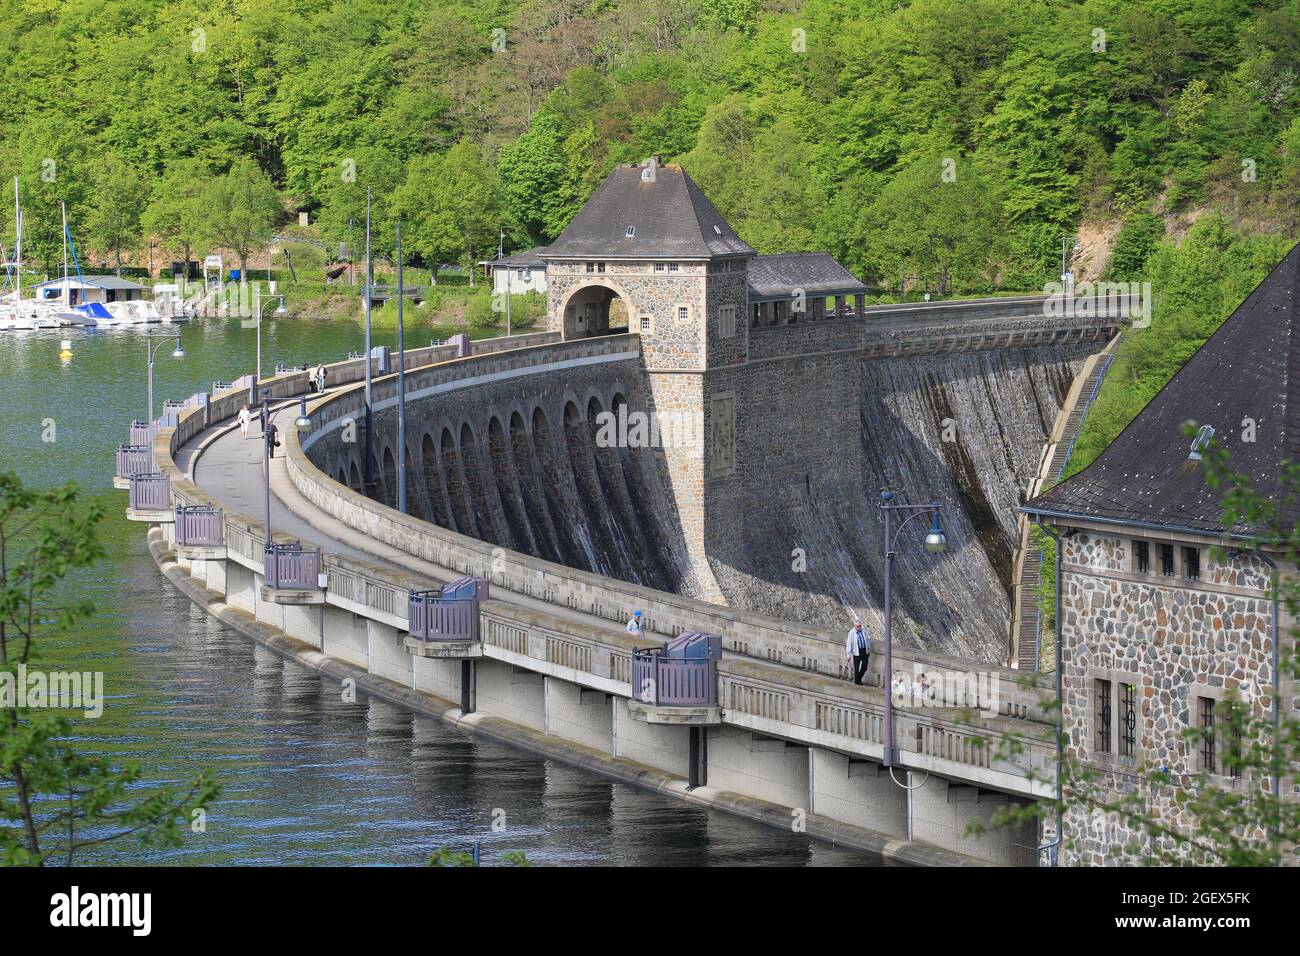 Le barrage d'Eder - un barrage allemand. La rivière Eder est damée jusqu'à former un réservoir. Le lac Eder sert d'approvisionnement en eau pour la rivière Weser, ... Banque D'Images